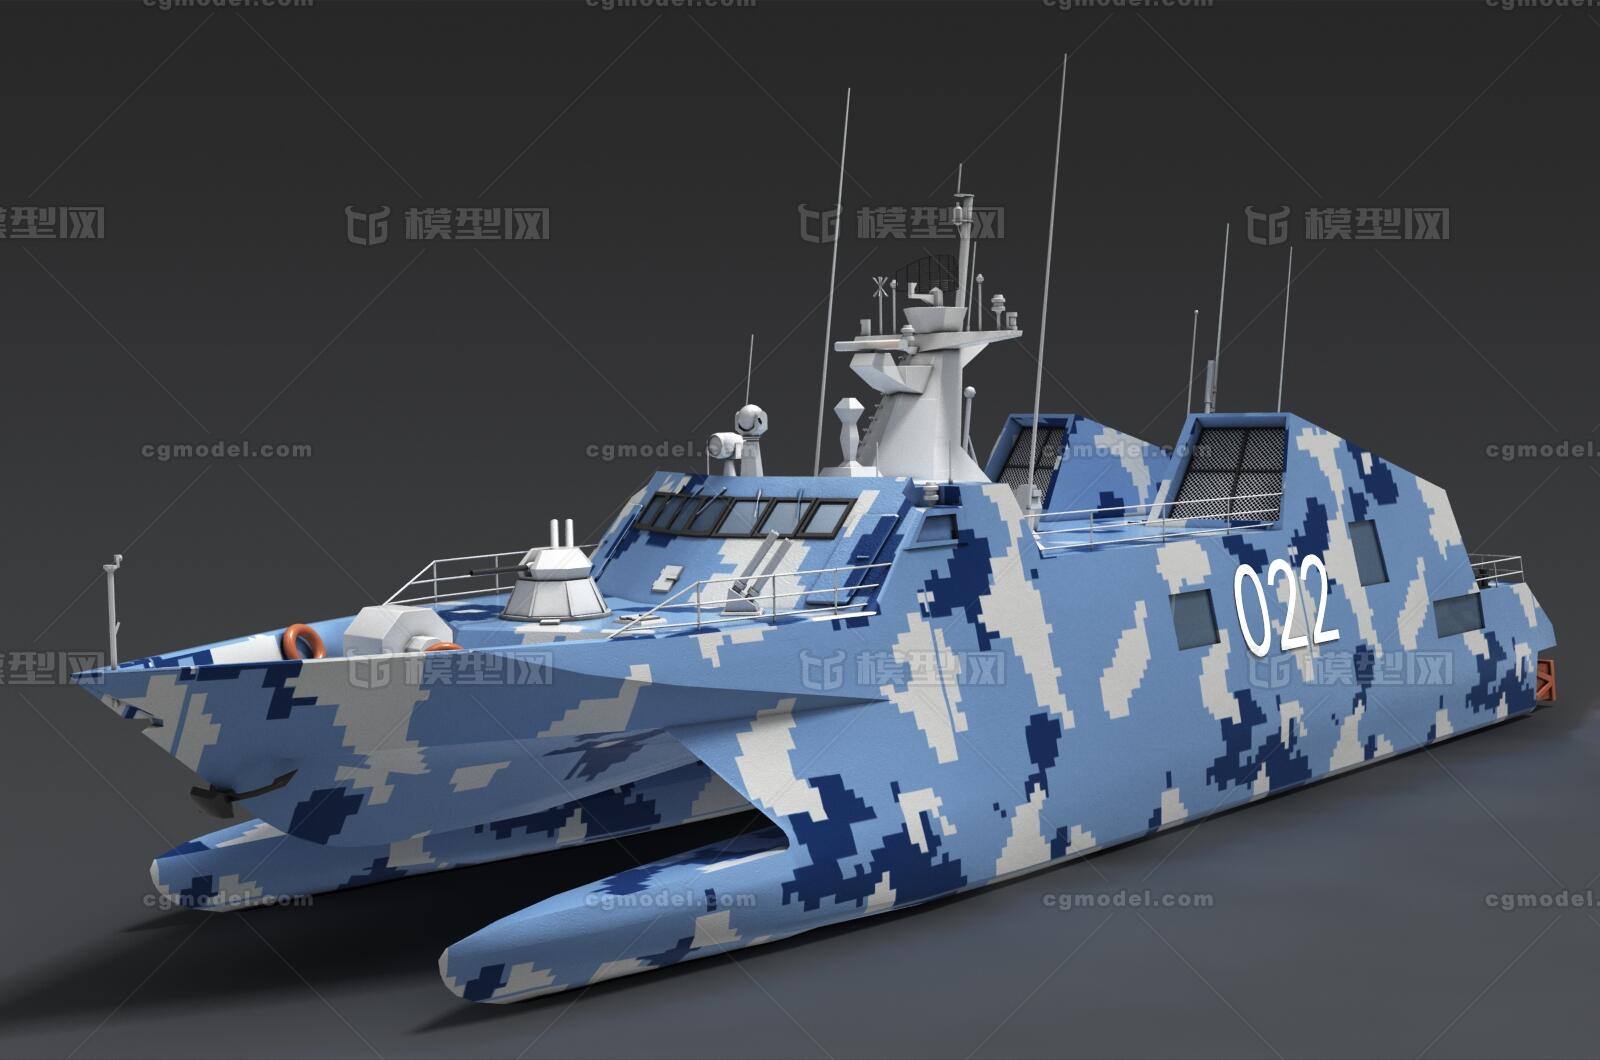 022型导弹艇 导弹艇 导弹快艇 冲锋艇 军用导弹艇 搜索雷达快艇 航海雷达快艇